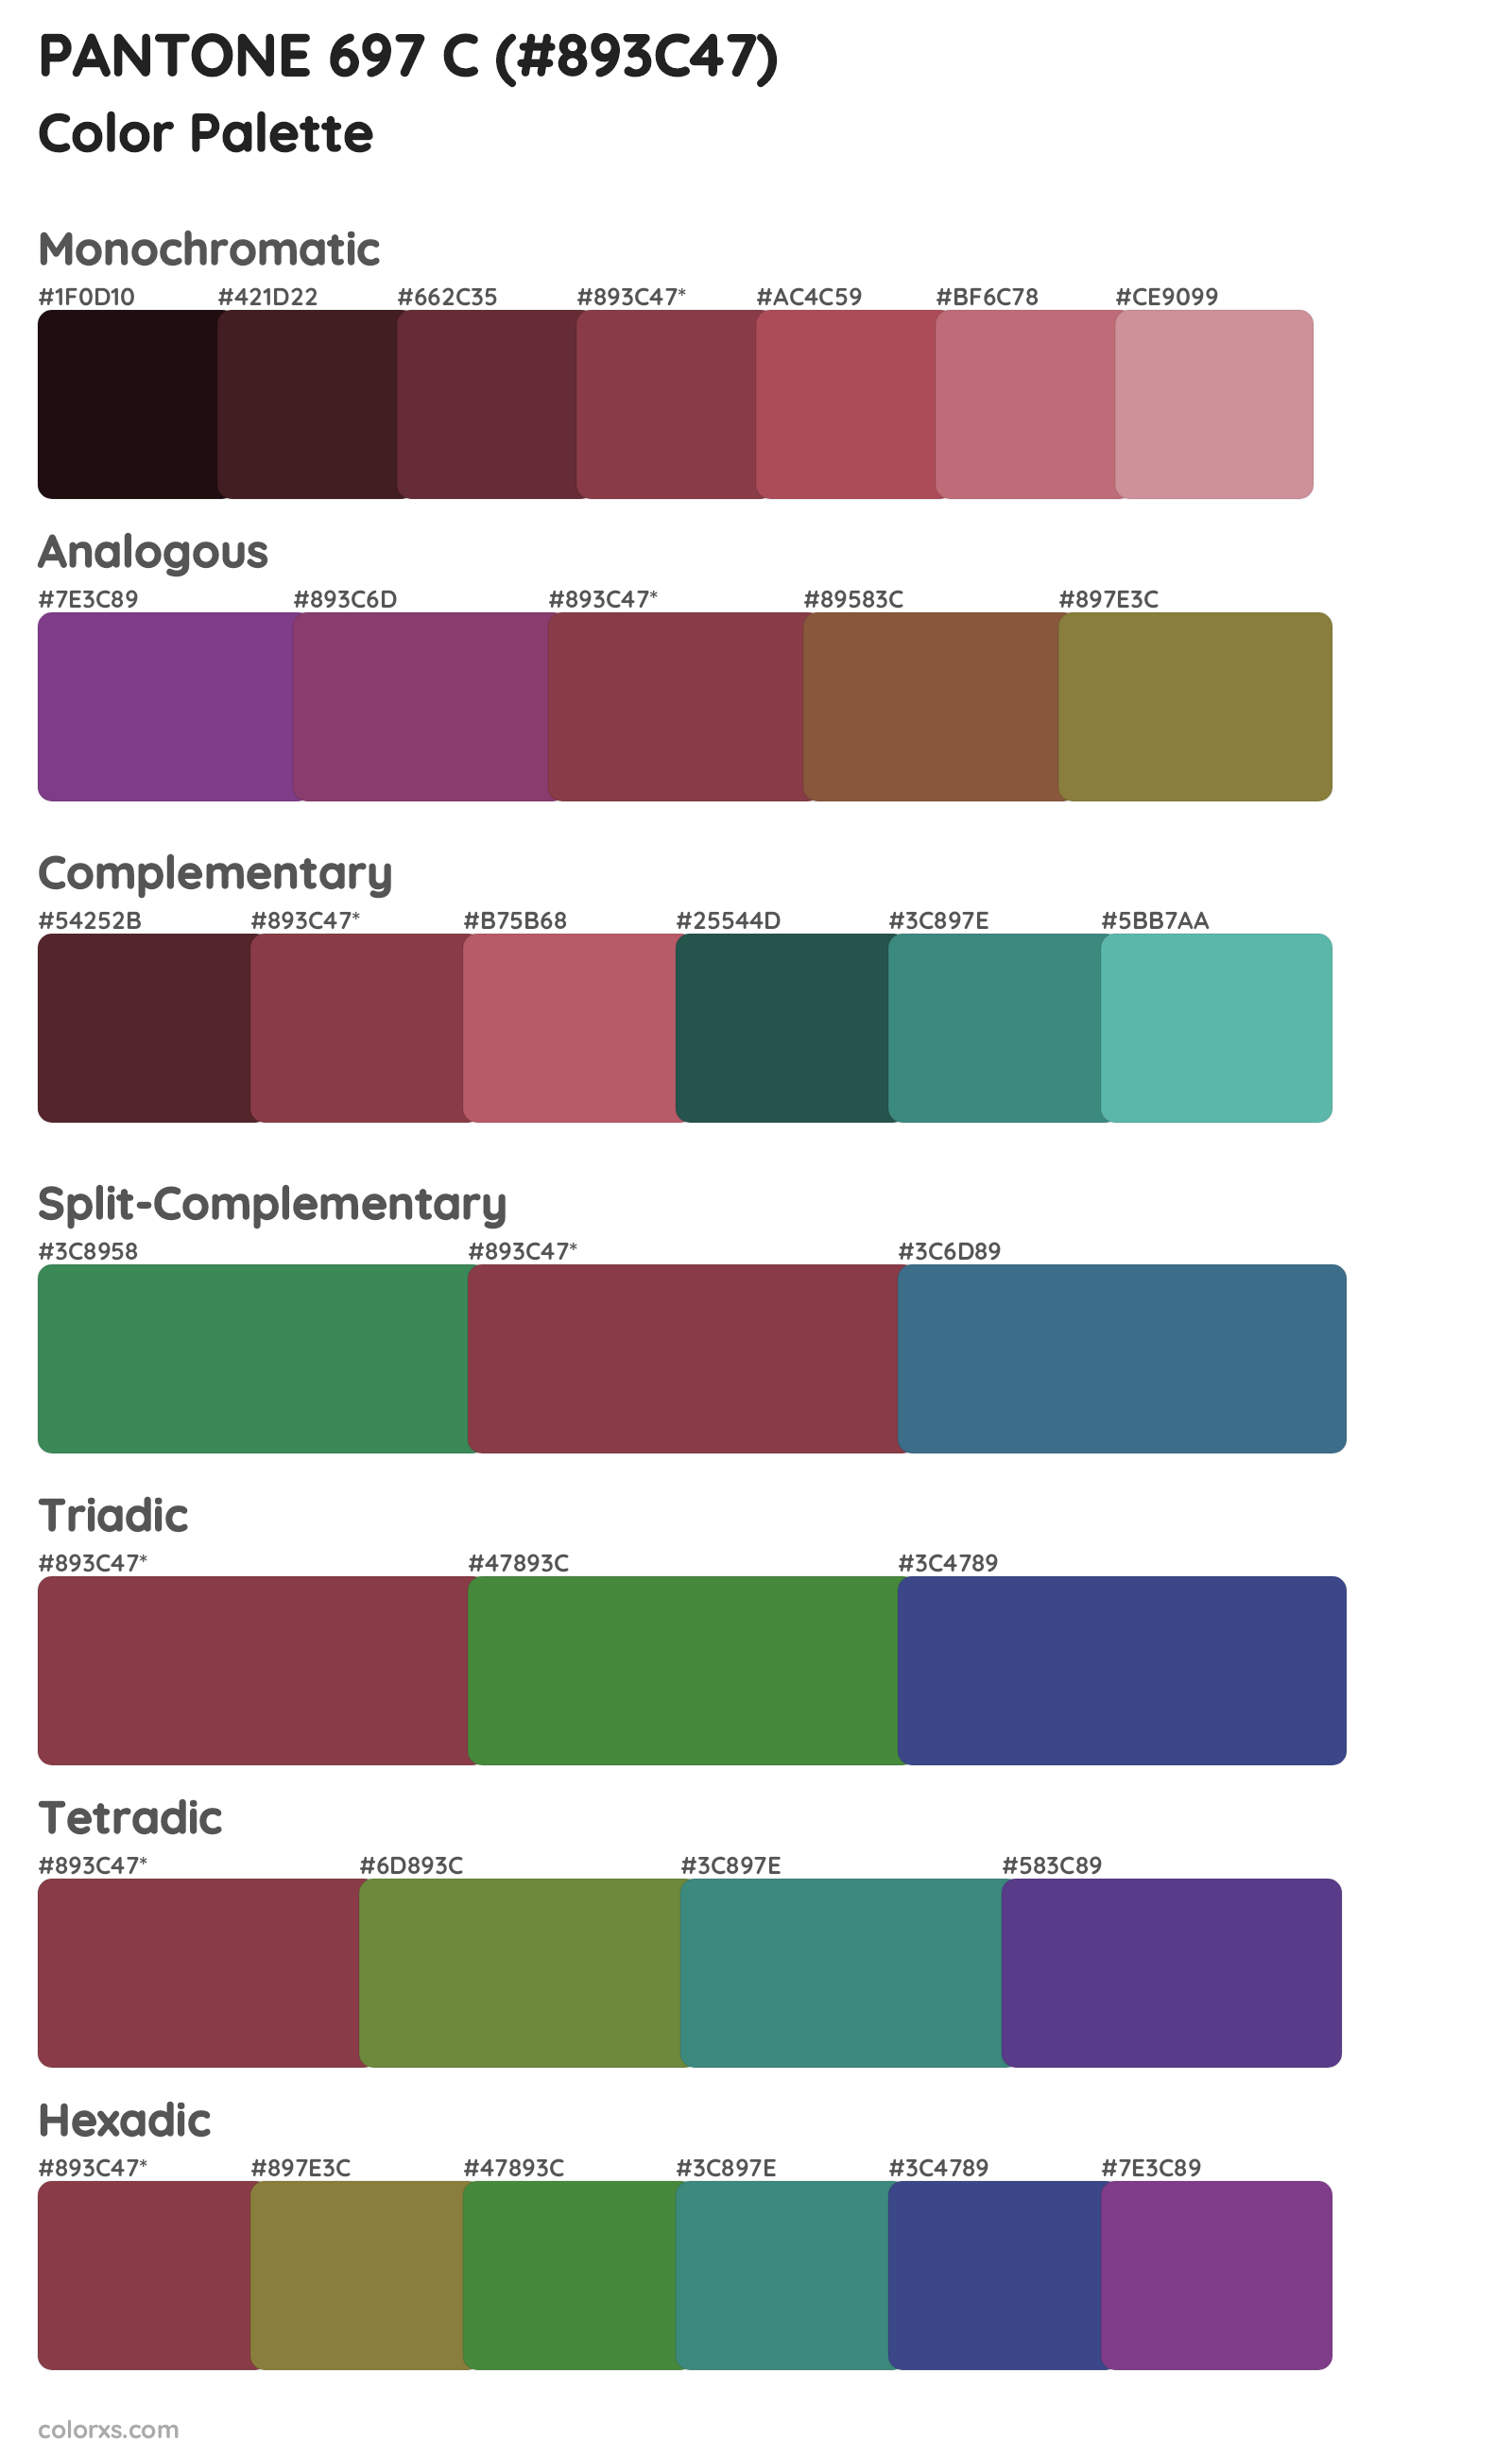 PANTONE 697 C Color Scheme Palettes